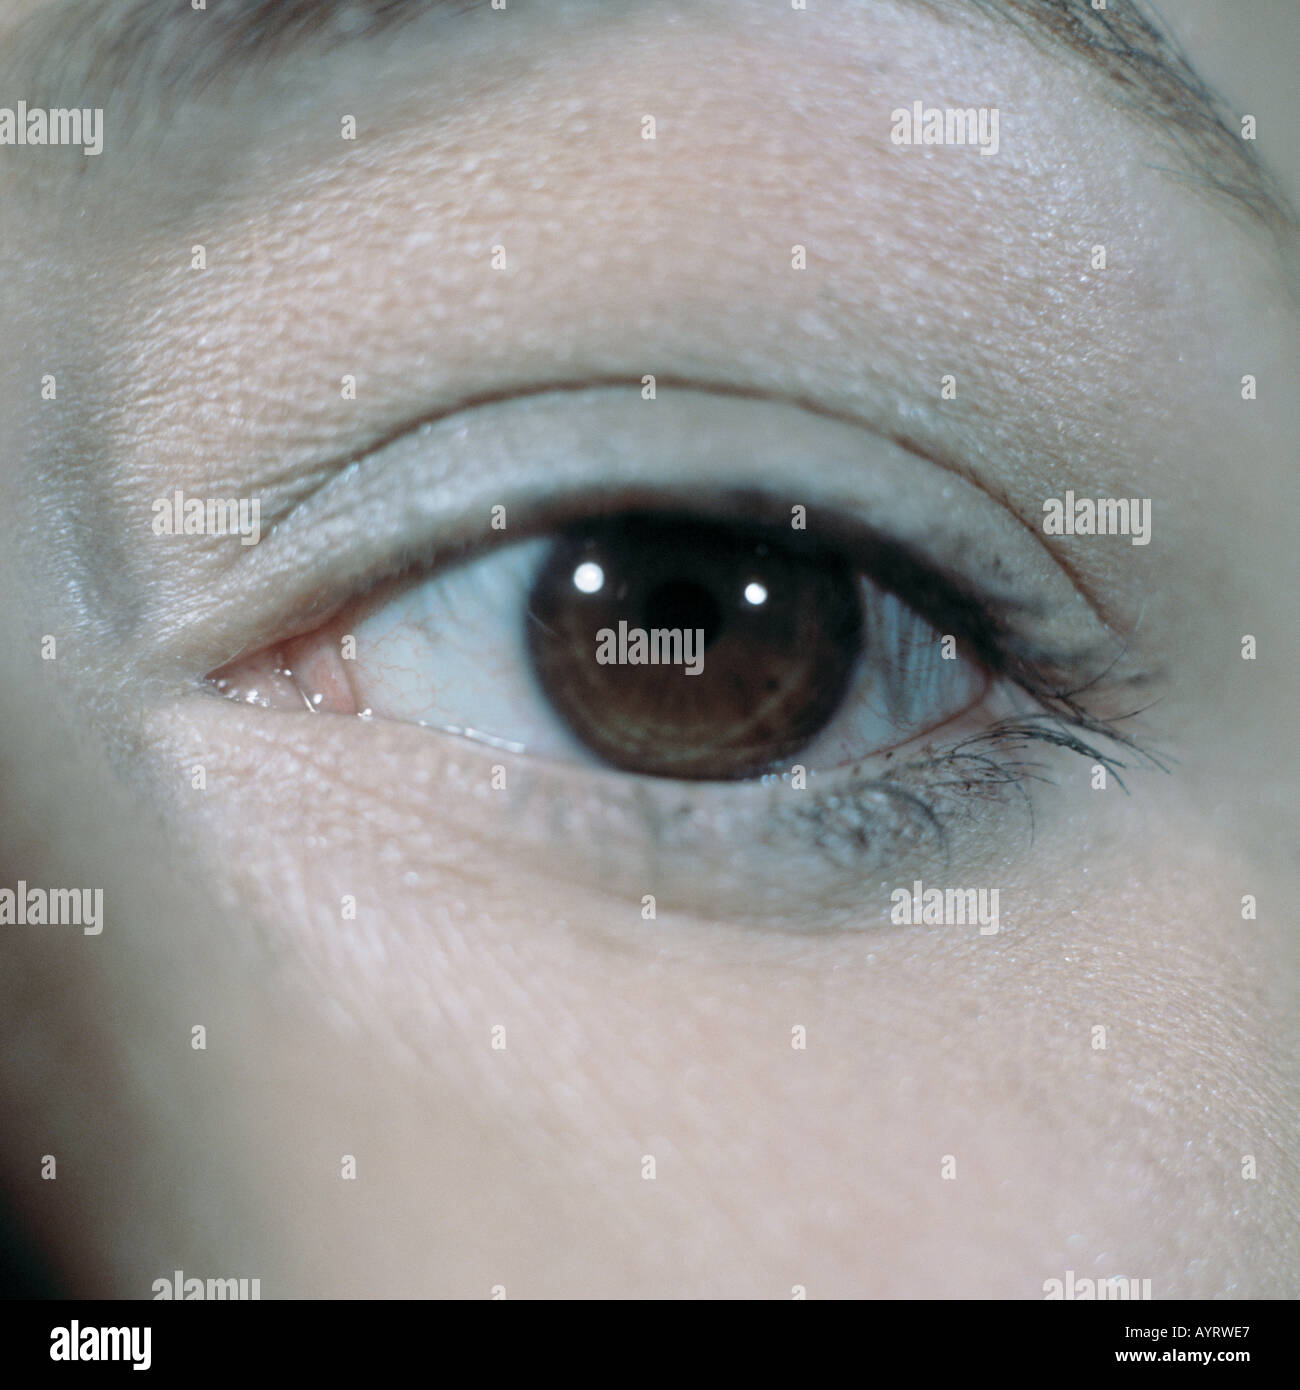 Maedchen, Gesichtspartie, Teilansicht, Auge, Augenpartie, braune Augen, Monika Stock Photo